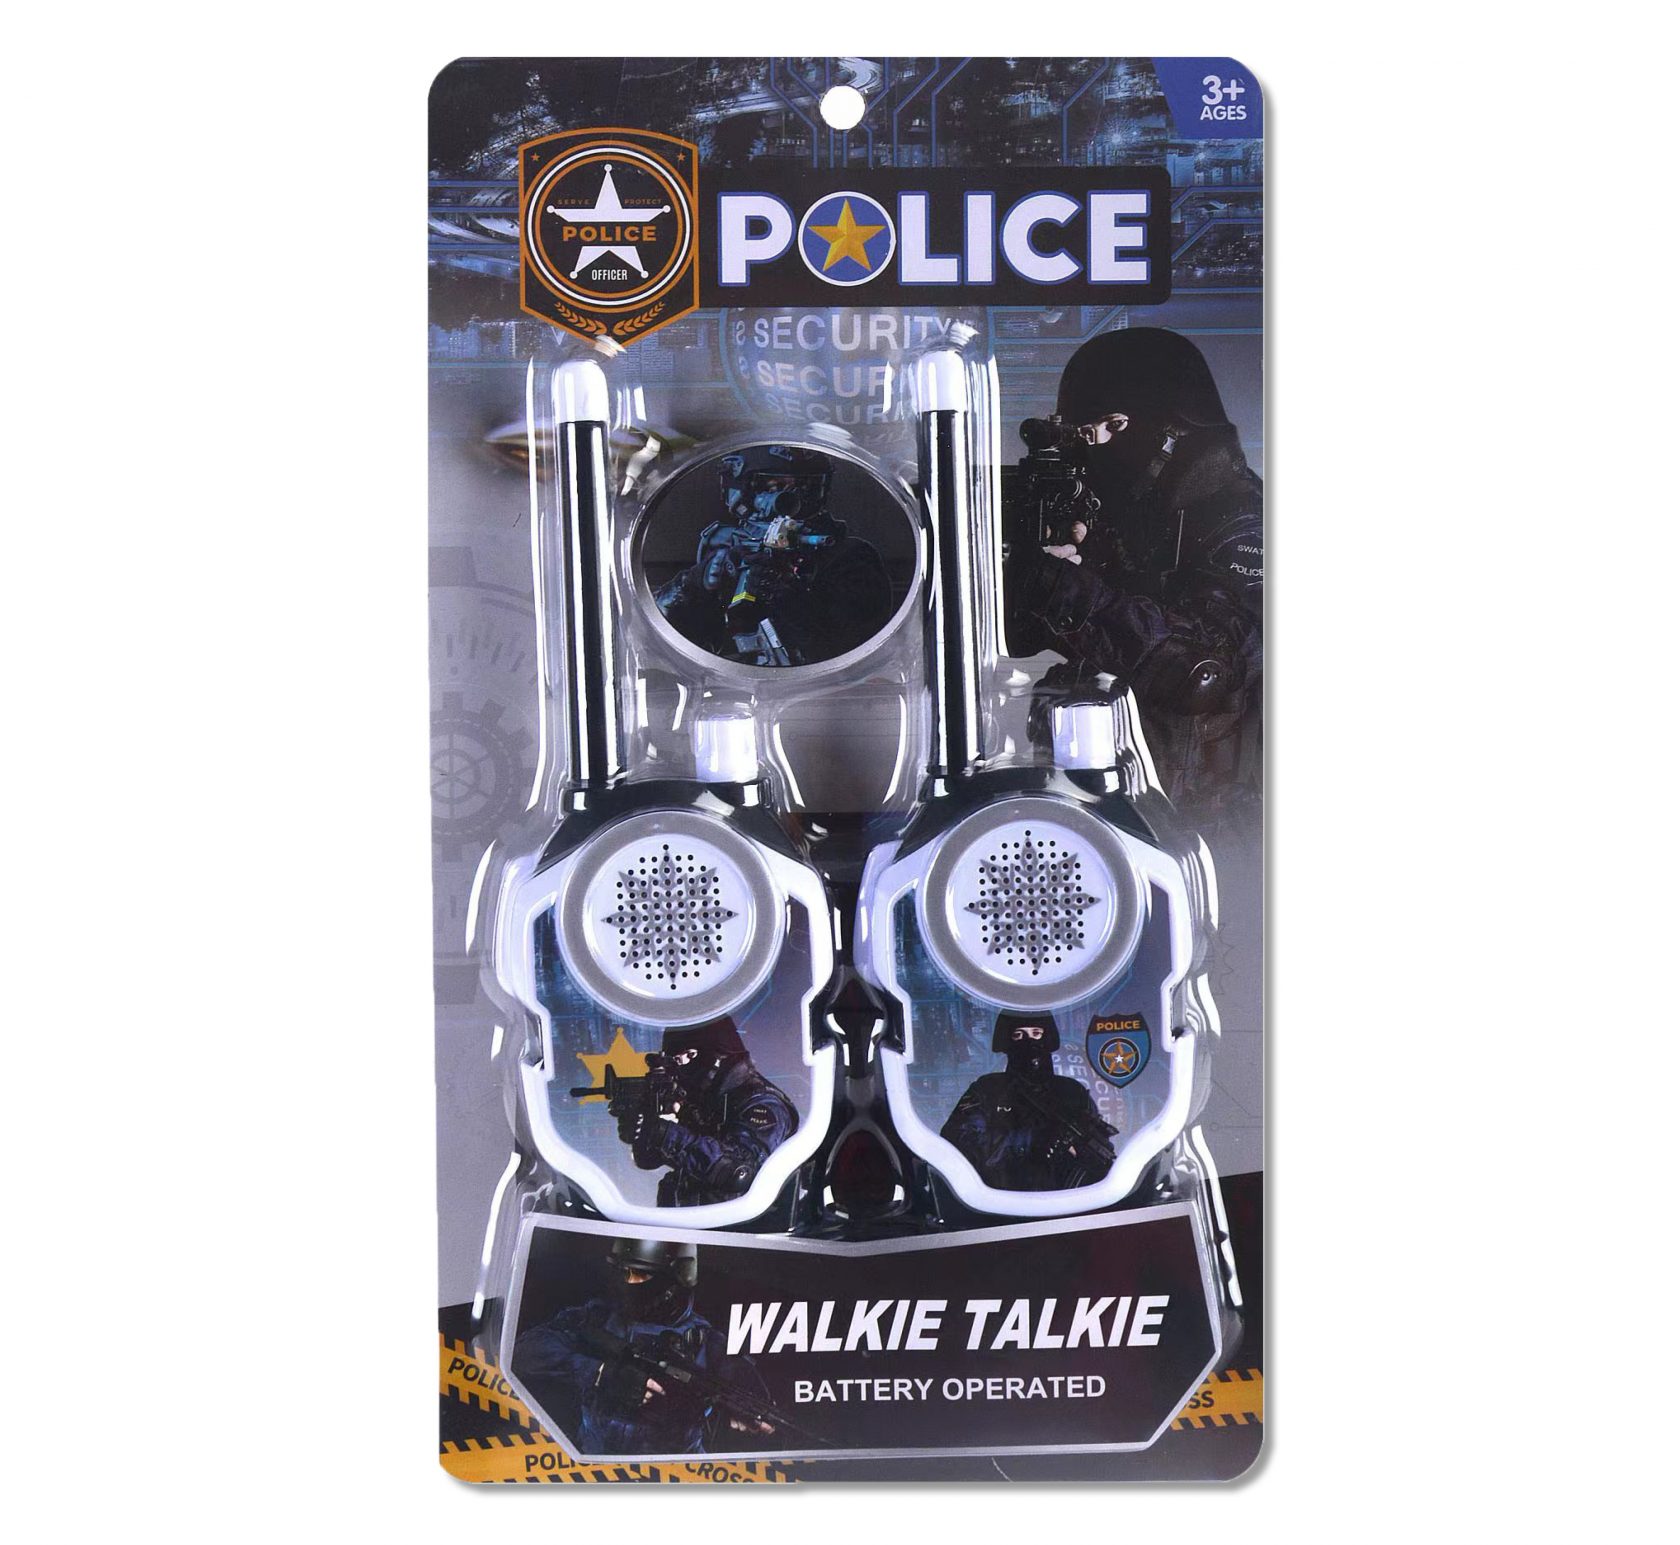 Παιχνίδι κατασκοπίας με το οποίο το παιδί ξεκινά να αναπτύσσει την φαντασία του παίρνοντας το ρόλο ενός πραγματικού αστυνομικού μιλώντας με τον συνάδελφό του στα ασύρματα walkie talkie μπαταρίας.